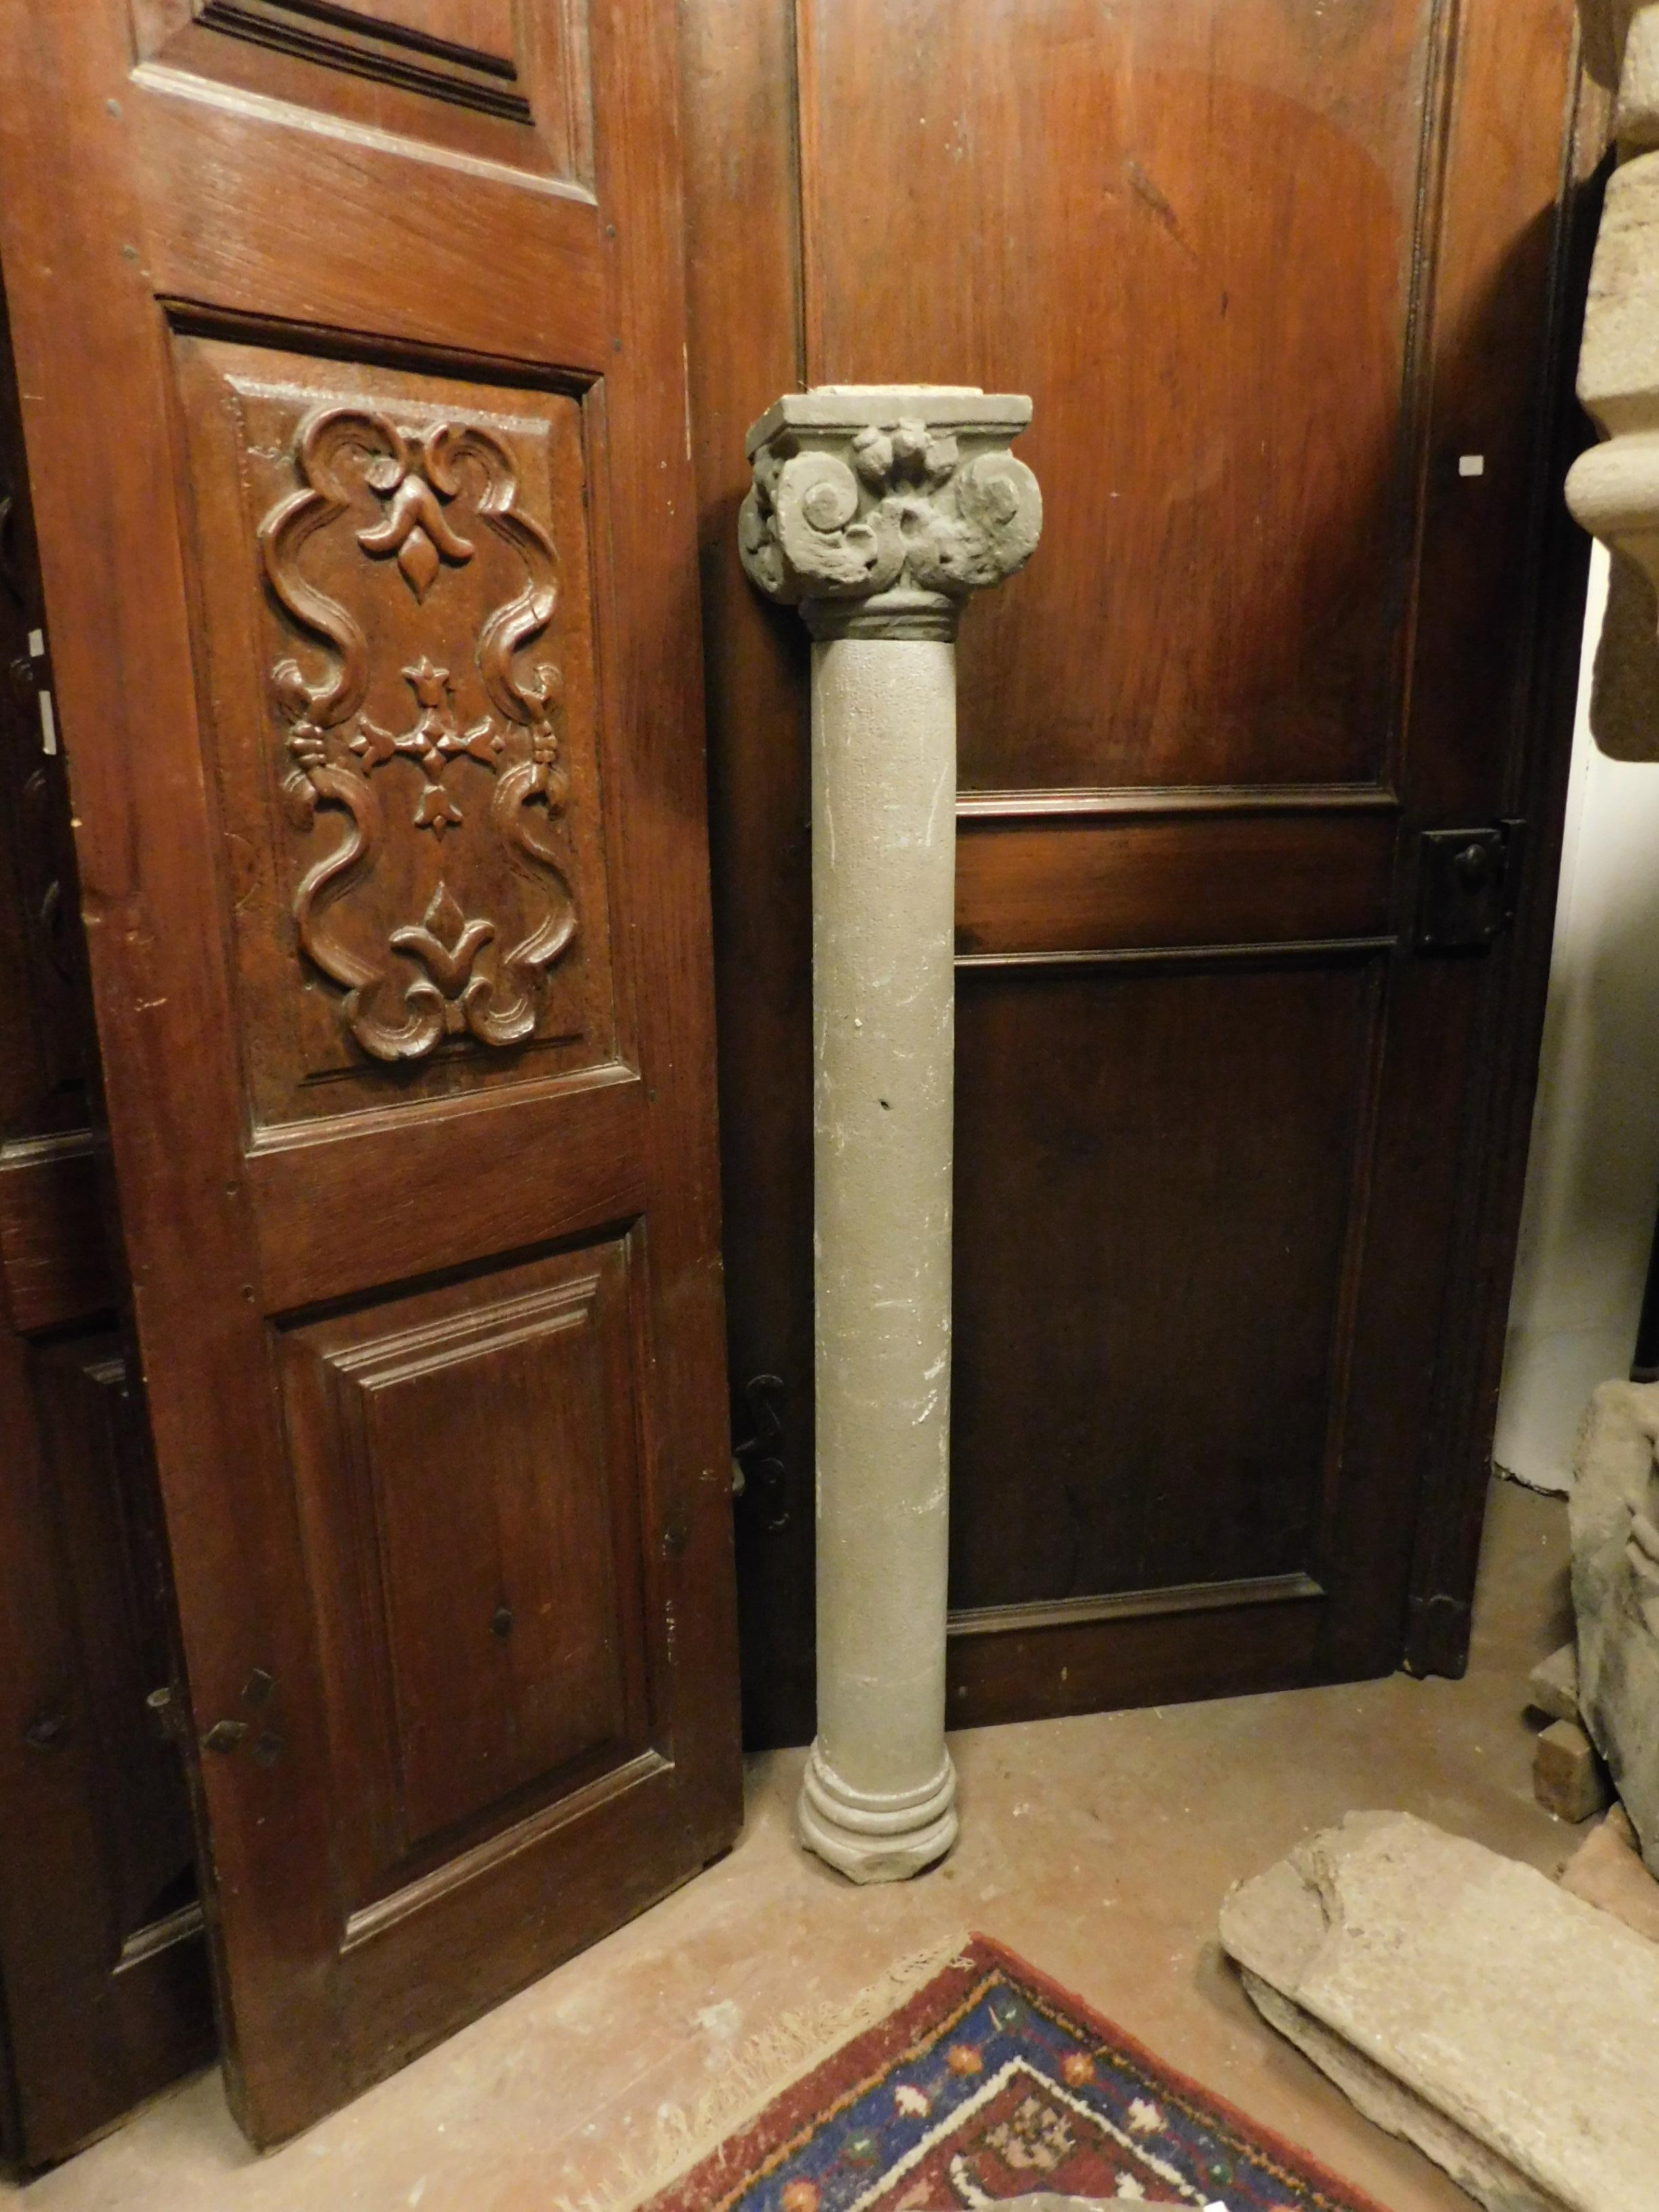 Colonne antique avec chapiteau sculpté dans la pierre large 25 x 25 cm
Mesures : H cm 145 + 21 cm de hauteur de capital.
Colonne de 15 cm de diamètre.